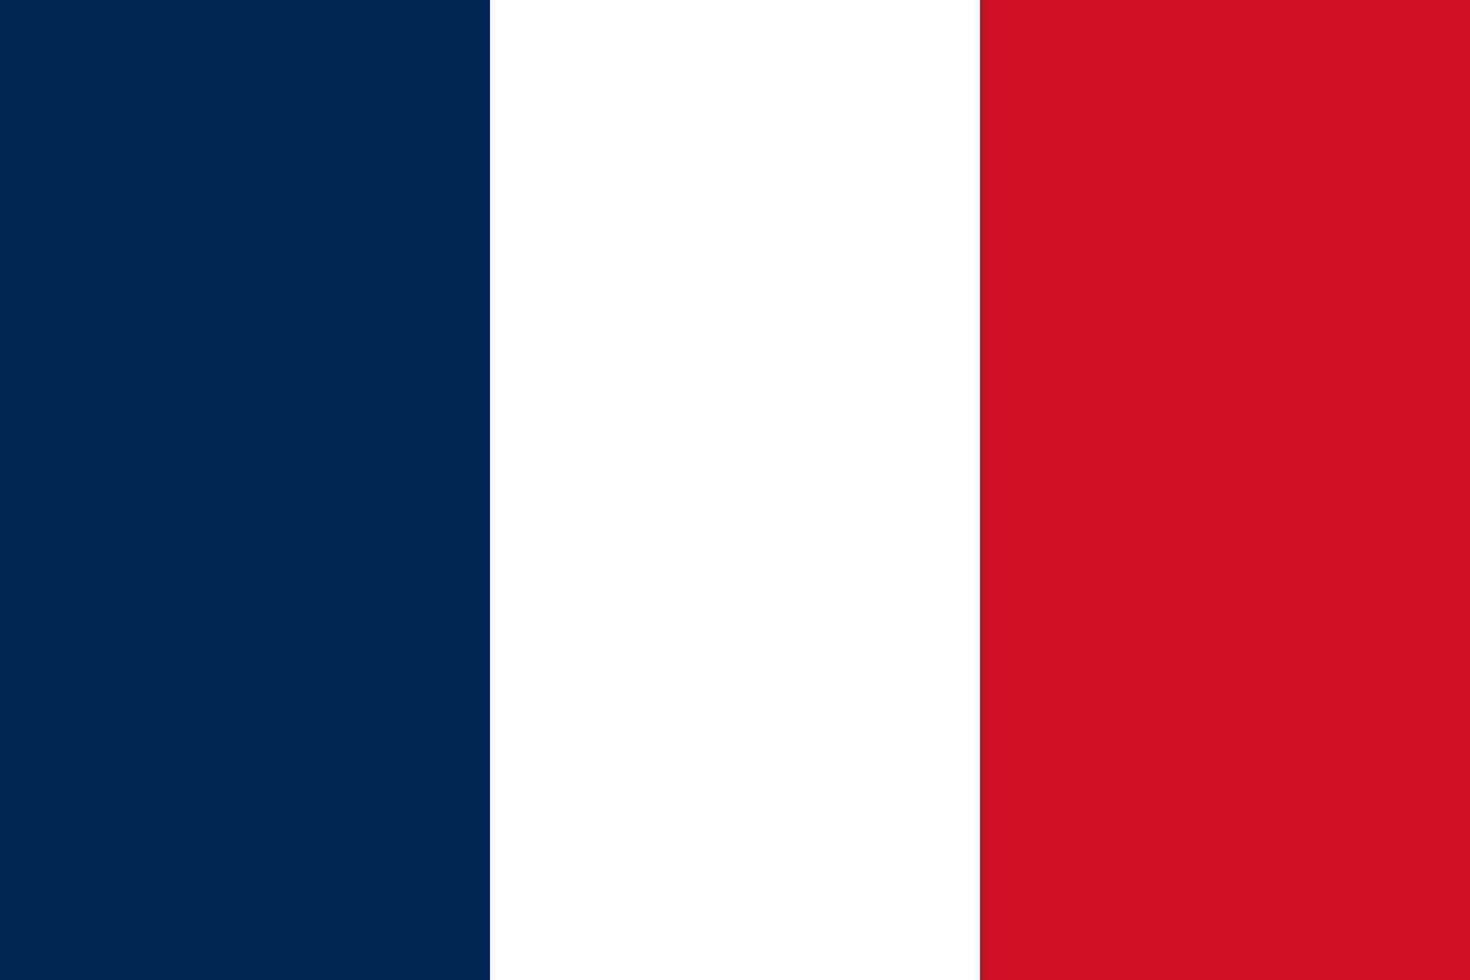 orgulhosamente francês - mostruário a tricolor beleza do a francês bandeira através uma impressionante vetor ilustração. comemoro a espírito do França com isto vibrante gráfico